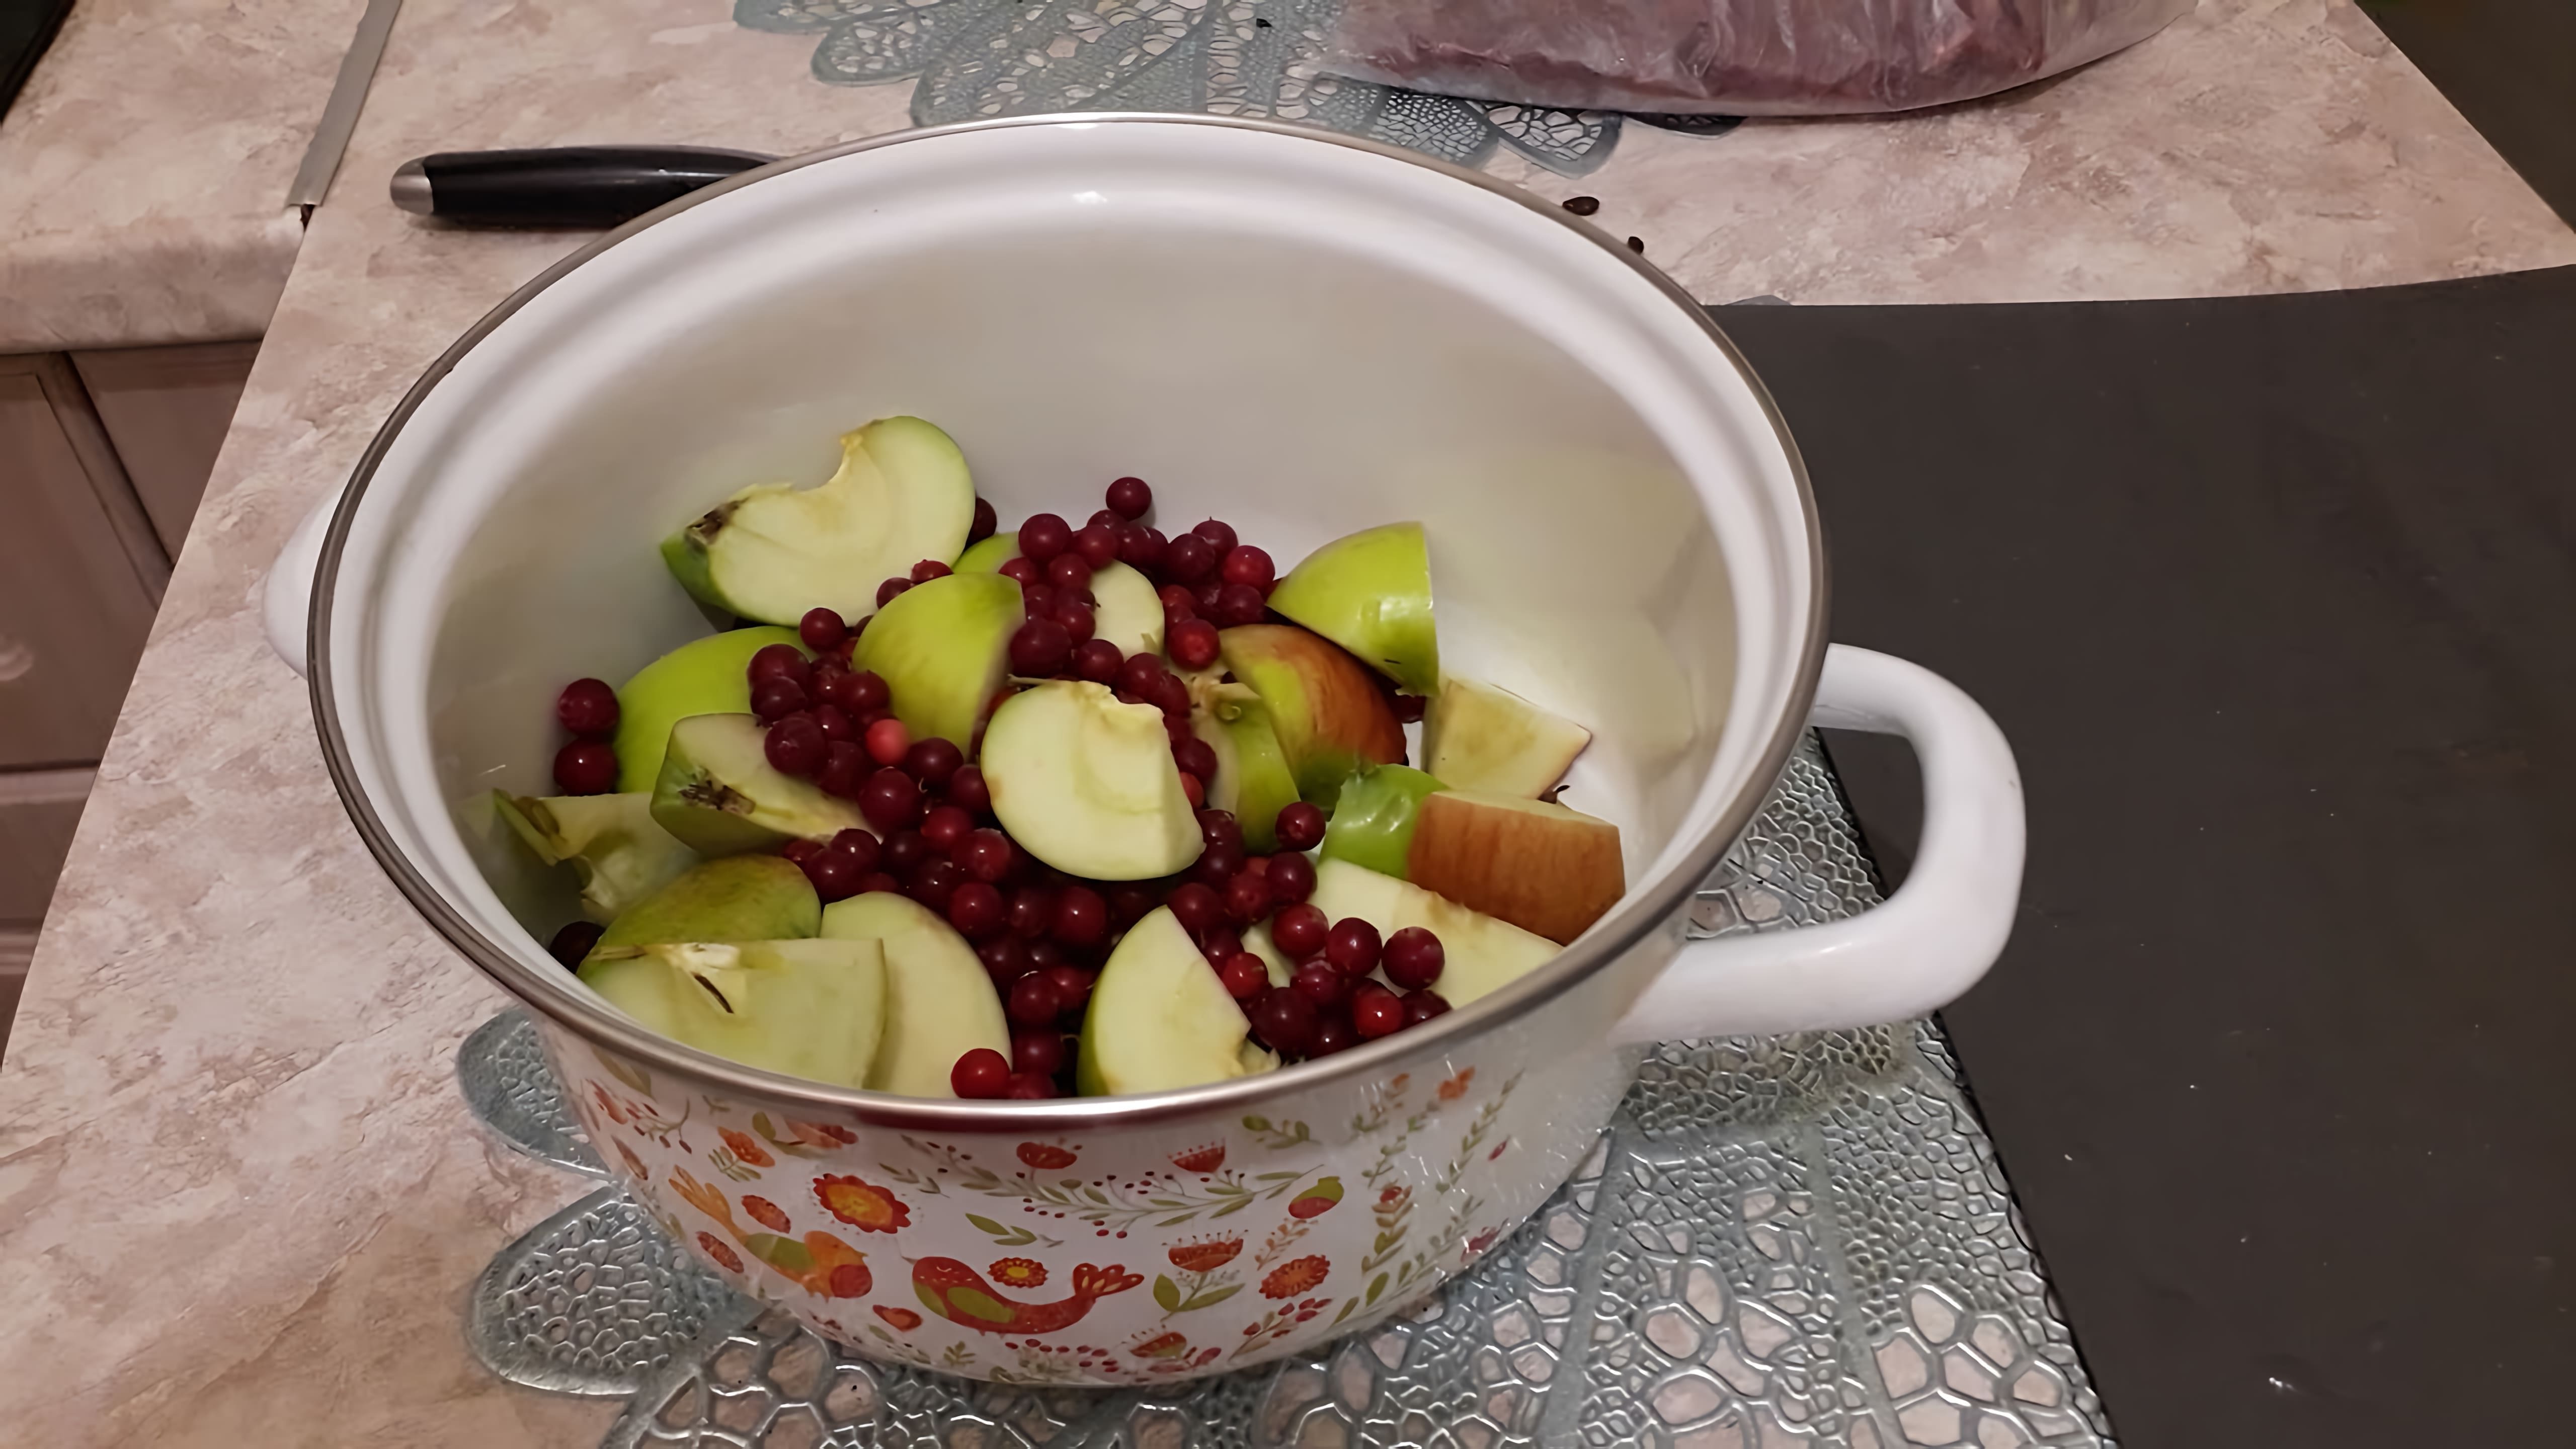 Яблочный компот с брусникой - это вкусный и полезный зимний рецепт, который можно приготовить в домашних условиях